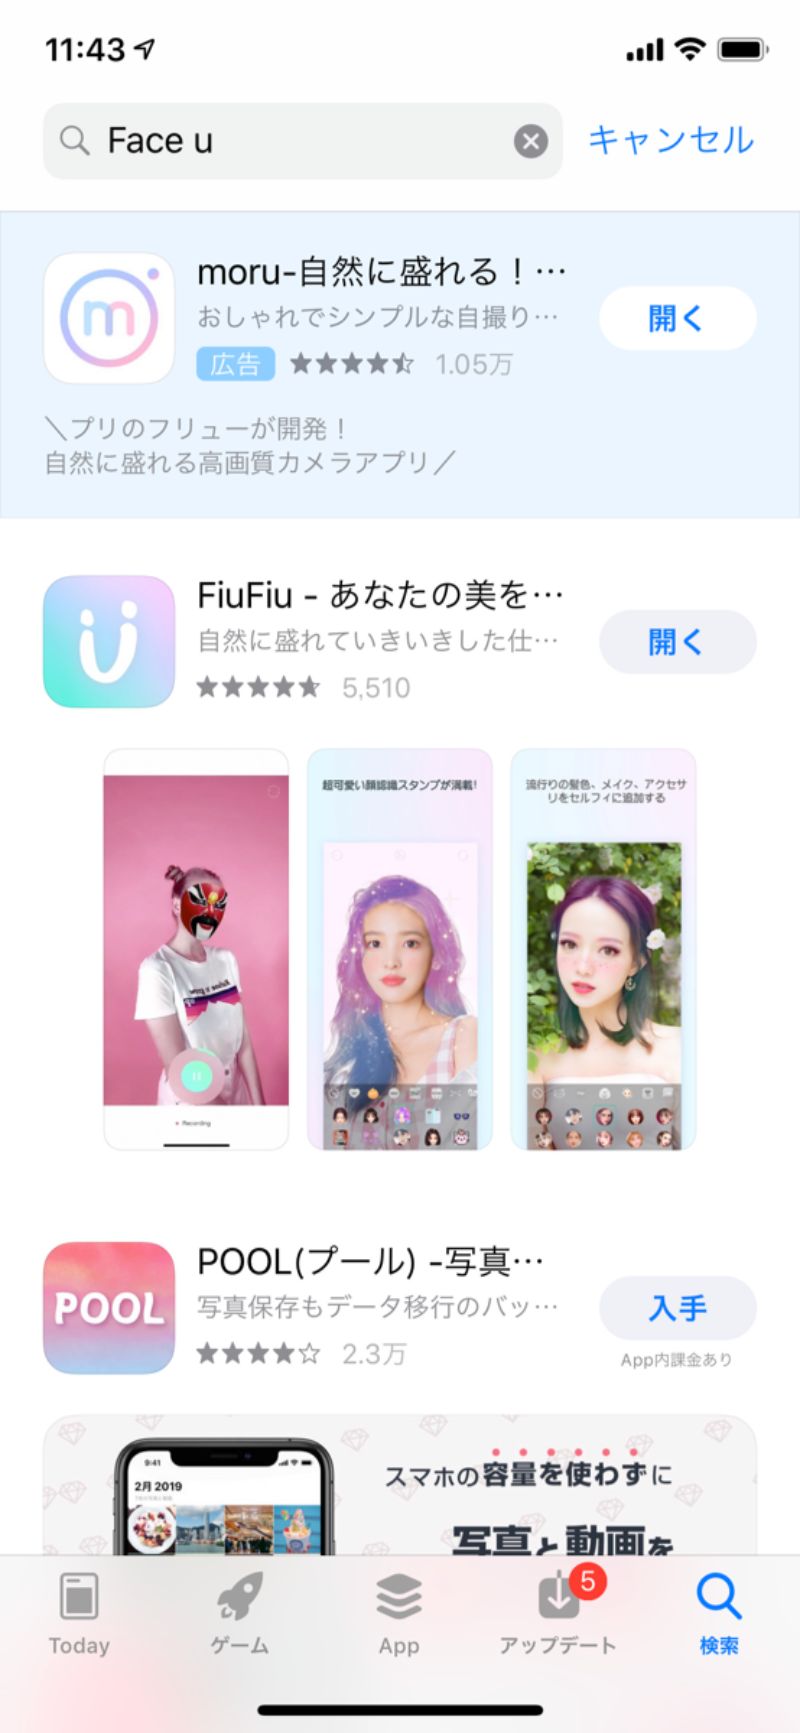 FaceUのアプリ名がFiuFiuに変わった